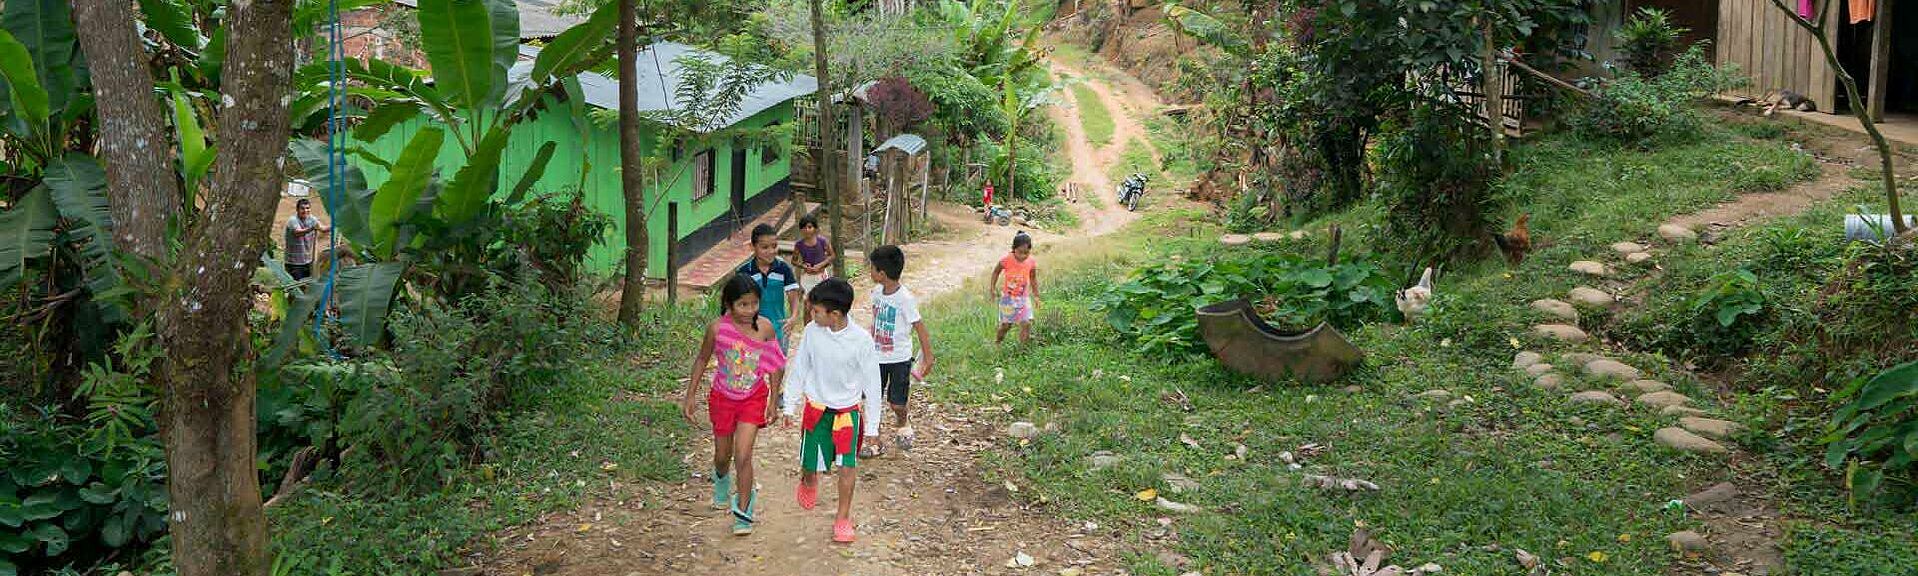 Kinder auf Weg durch Dorf